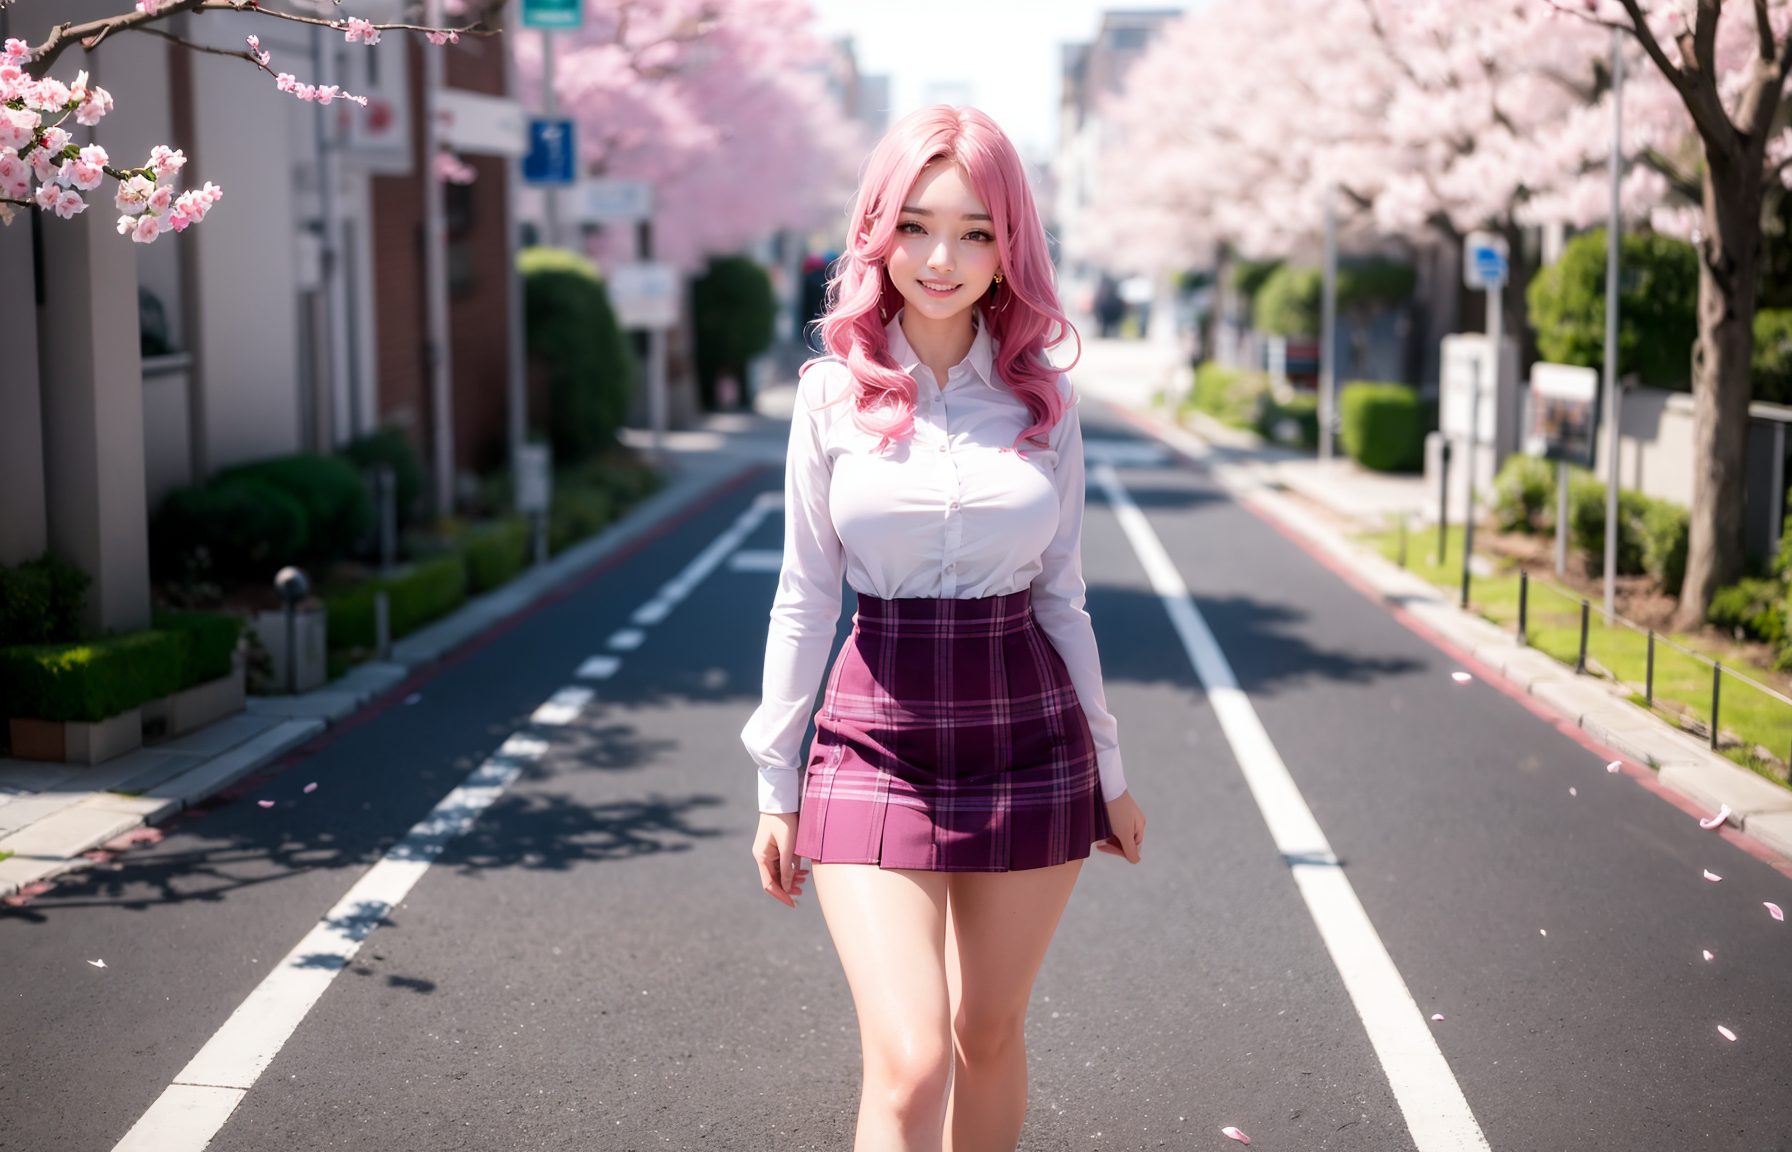 Ai Art Women Asian Smiling Skirt Flowers Petals Looking At Viewer Pink Hair Legs 1792x1152